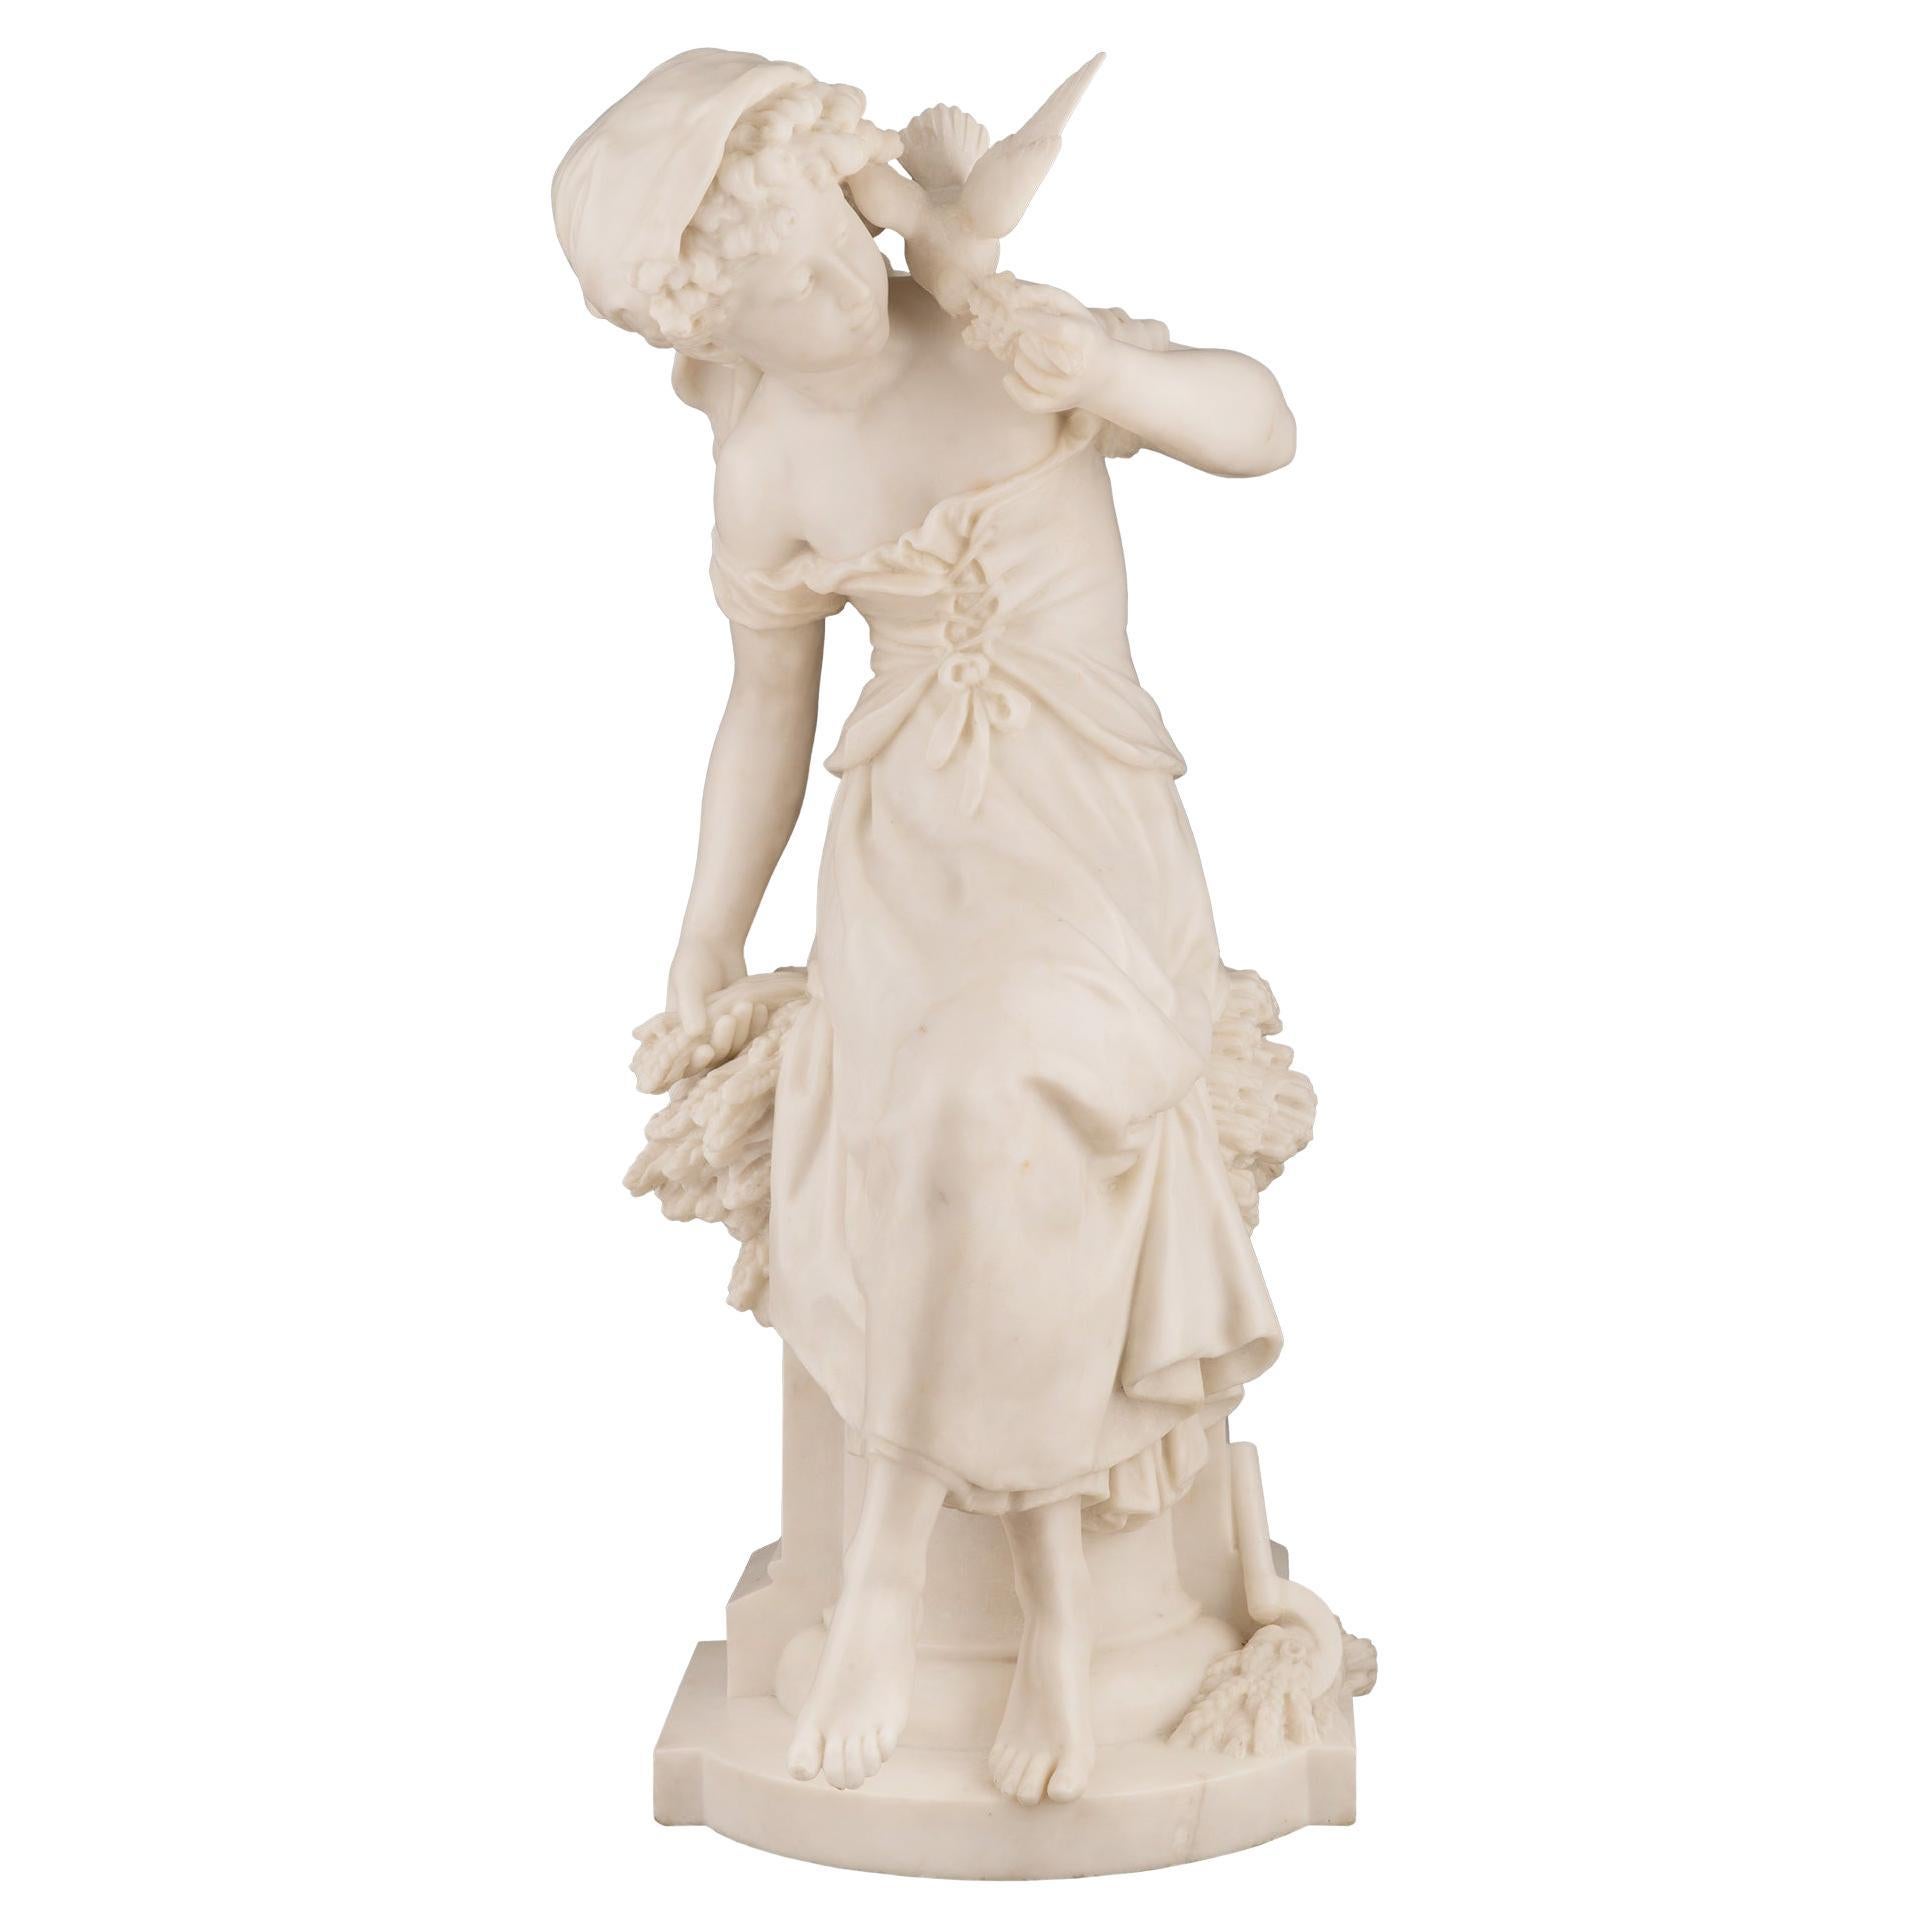 Statue d'une jeune fille en marbre blanc de Carrare du XIXe siècle, signée Moreau